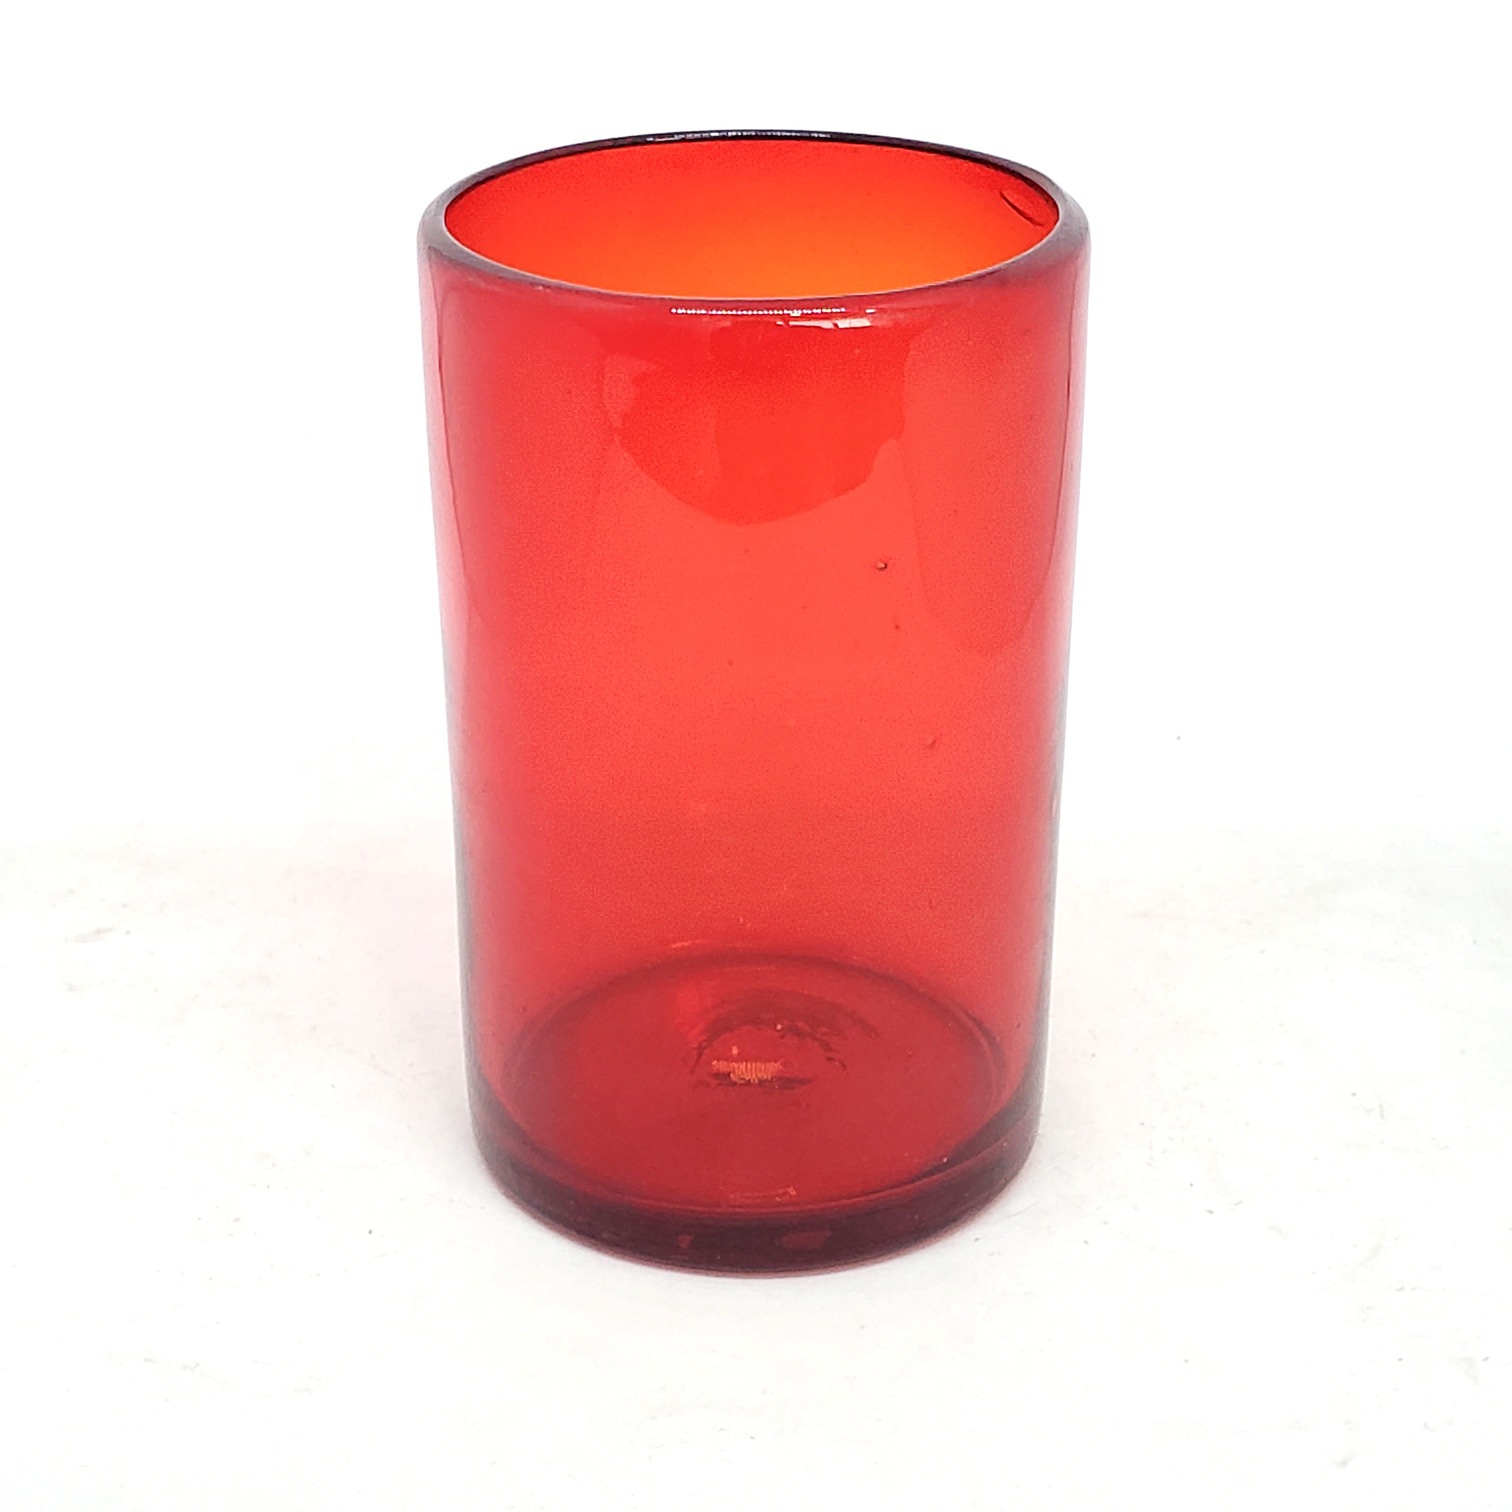 Novedades / Juego de 6 vasos grandes color rojo rubí / Éstos artesanales vasos le darán un toque clásico a su bebida favorita.